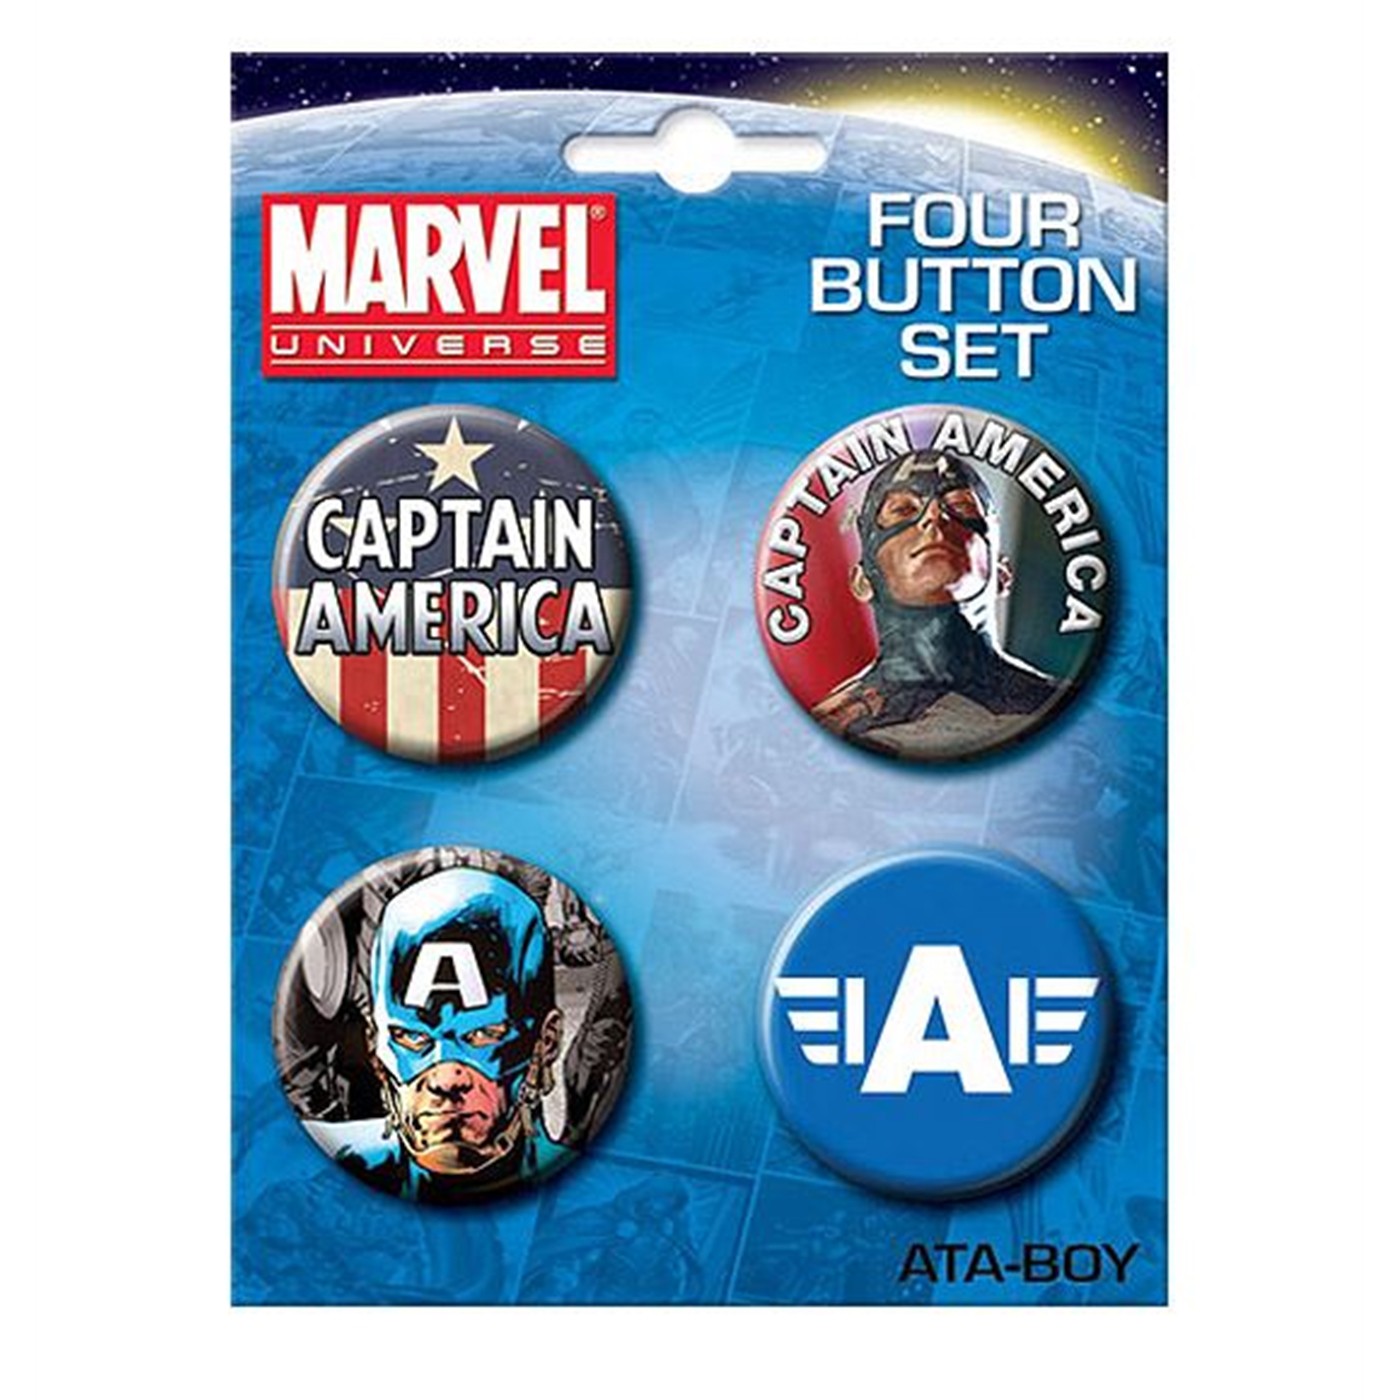 Captain America Four Button Set 1